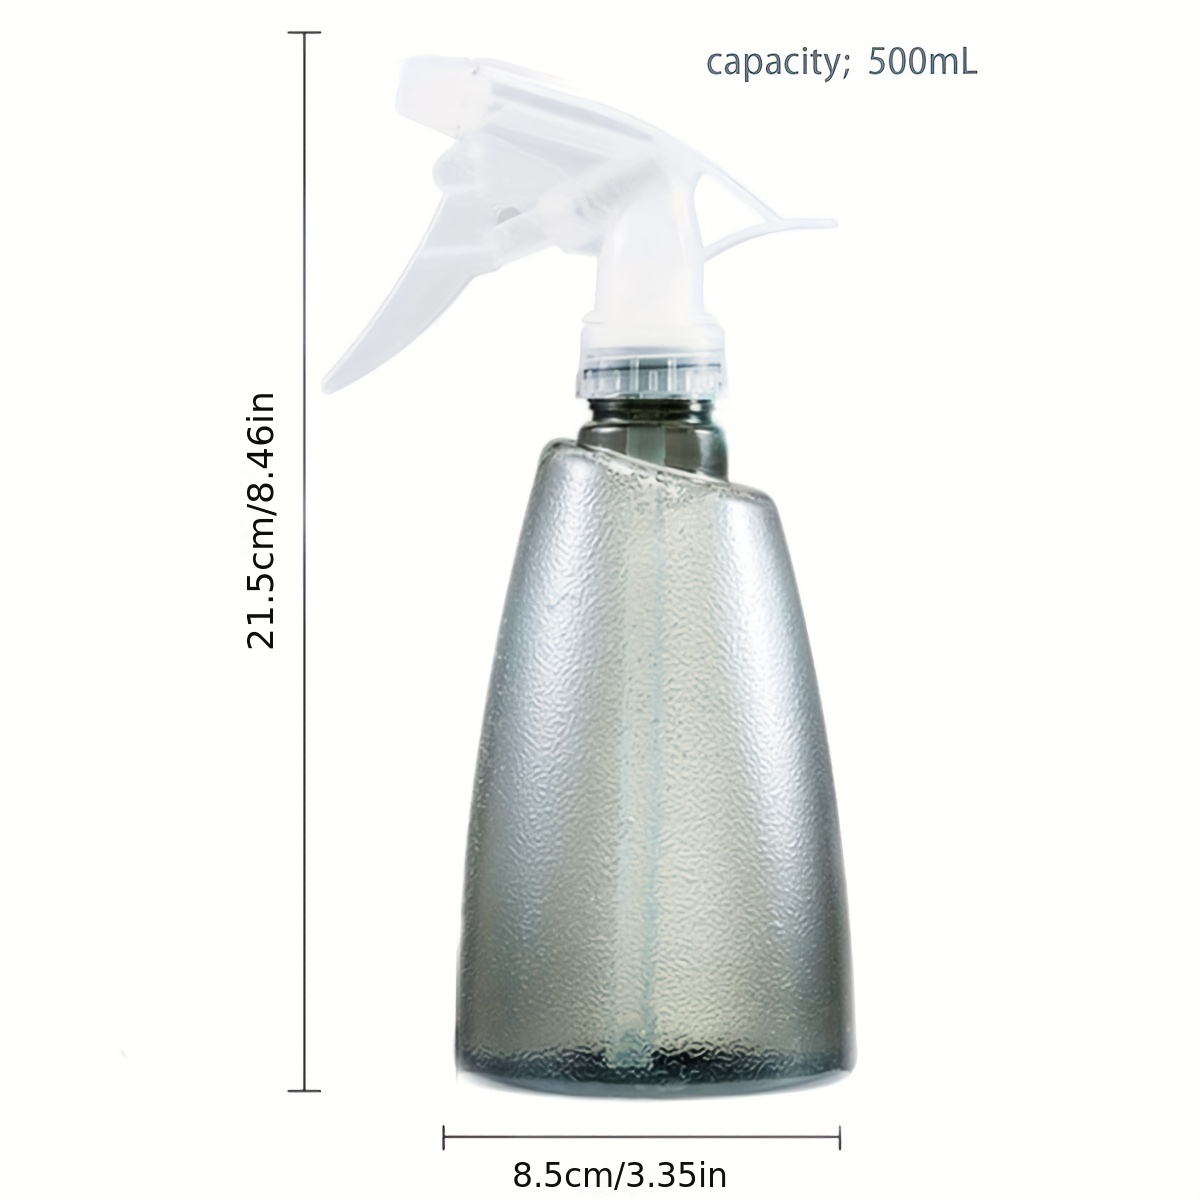 2 Plastic Spray Bottle 16 Oz Mist Flower Sprayer Hair Salon Tool Haird —  AllTopBargains